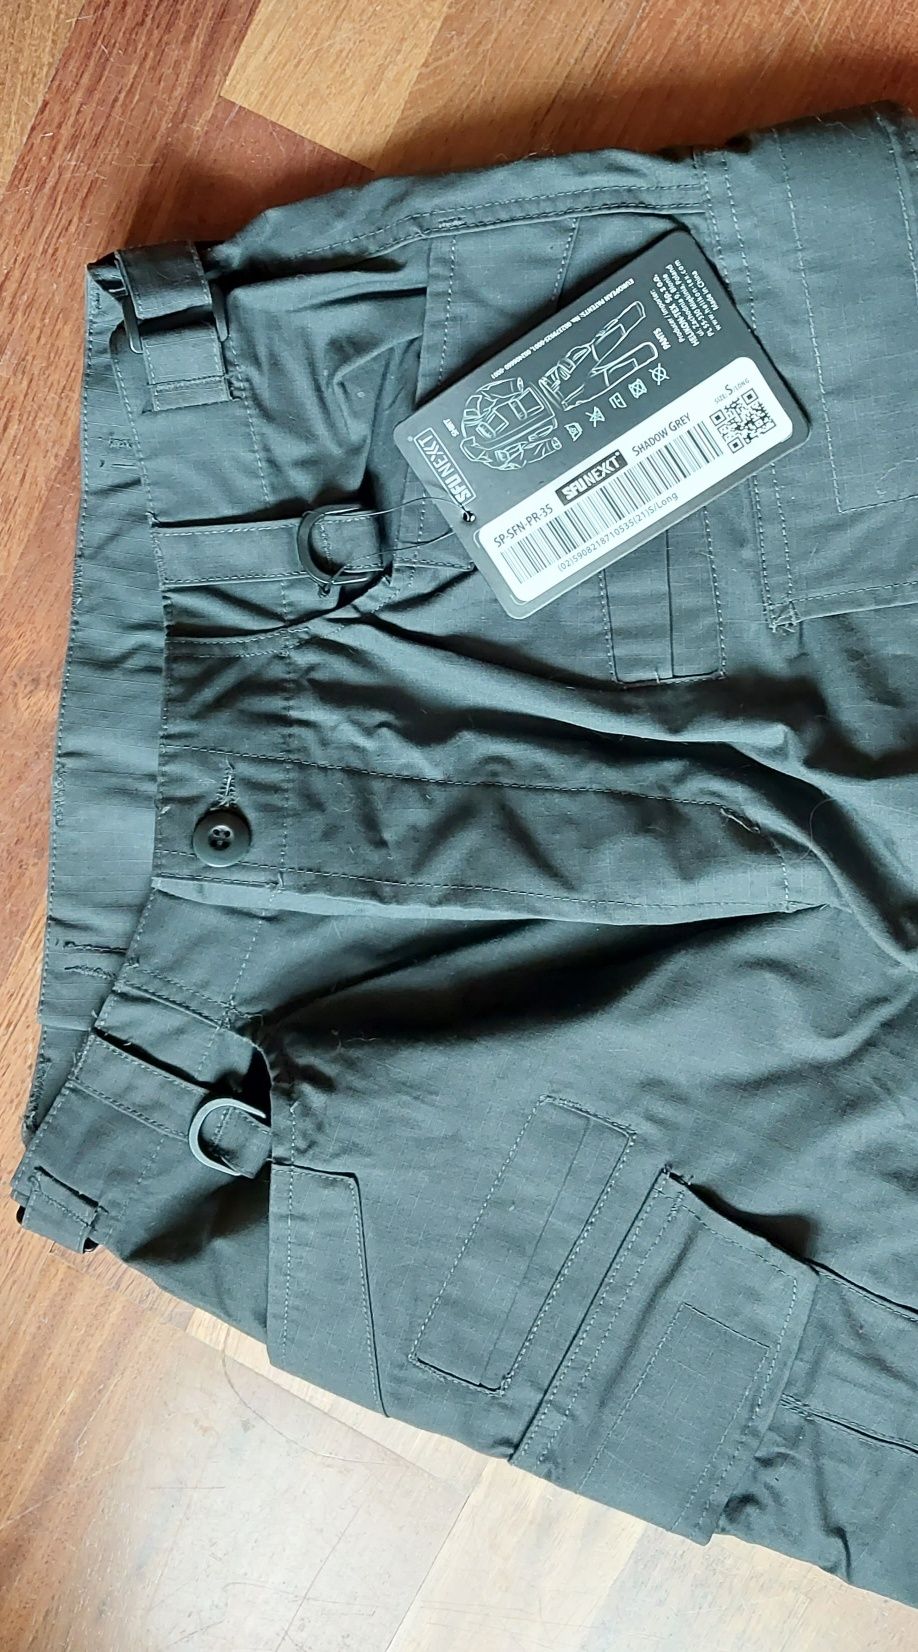 Spodnie wojskowe bojówki S oliwkowo-szare